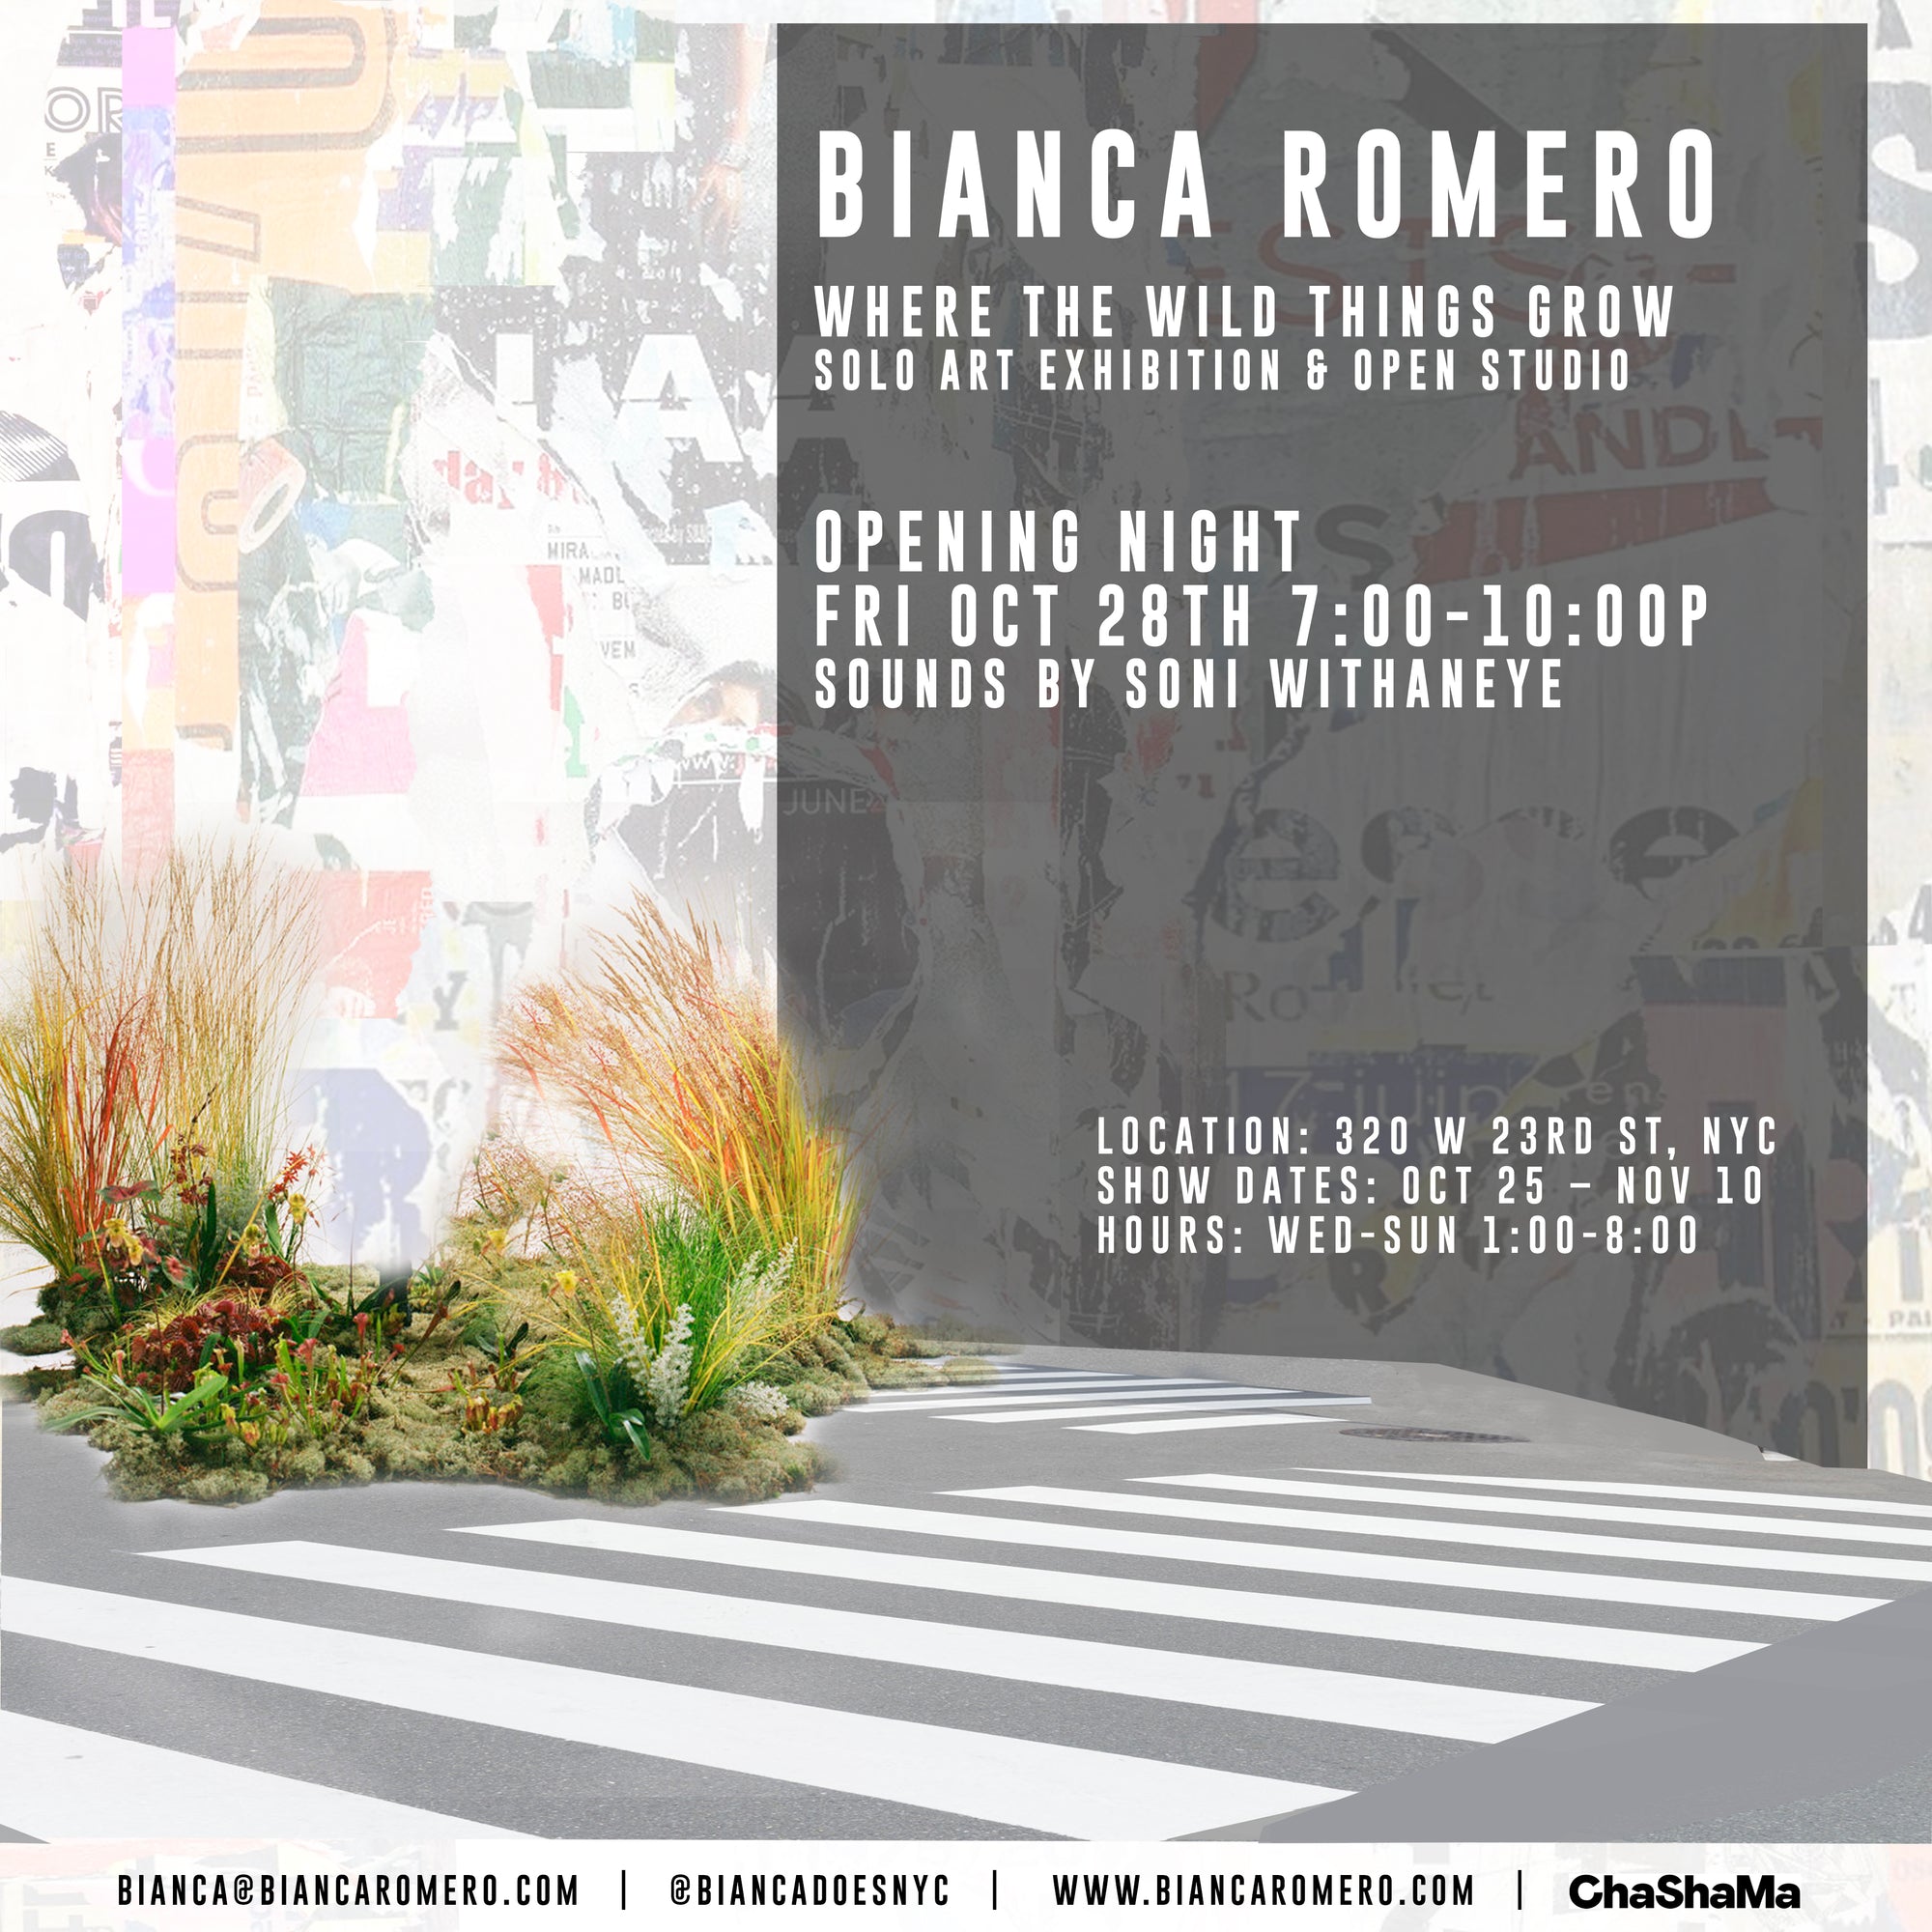 Bianca Romero: "Where the Wild Things Grow" Exhibit, NYC